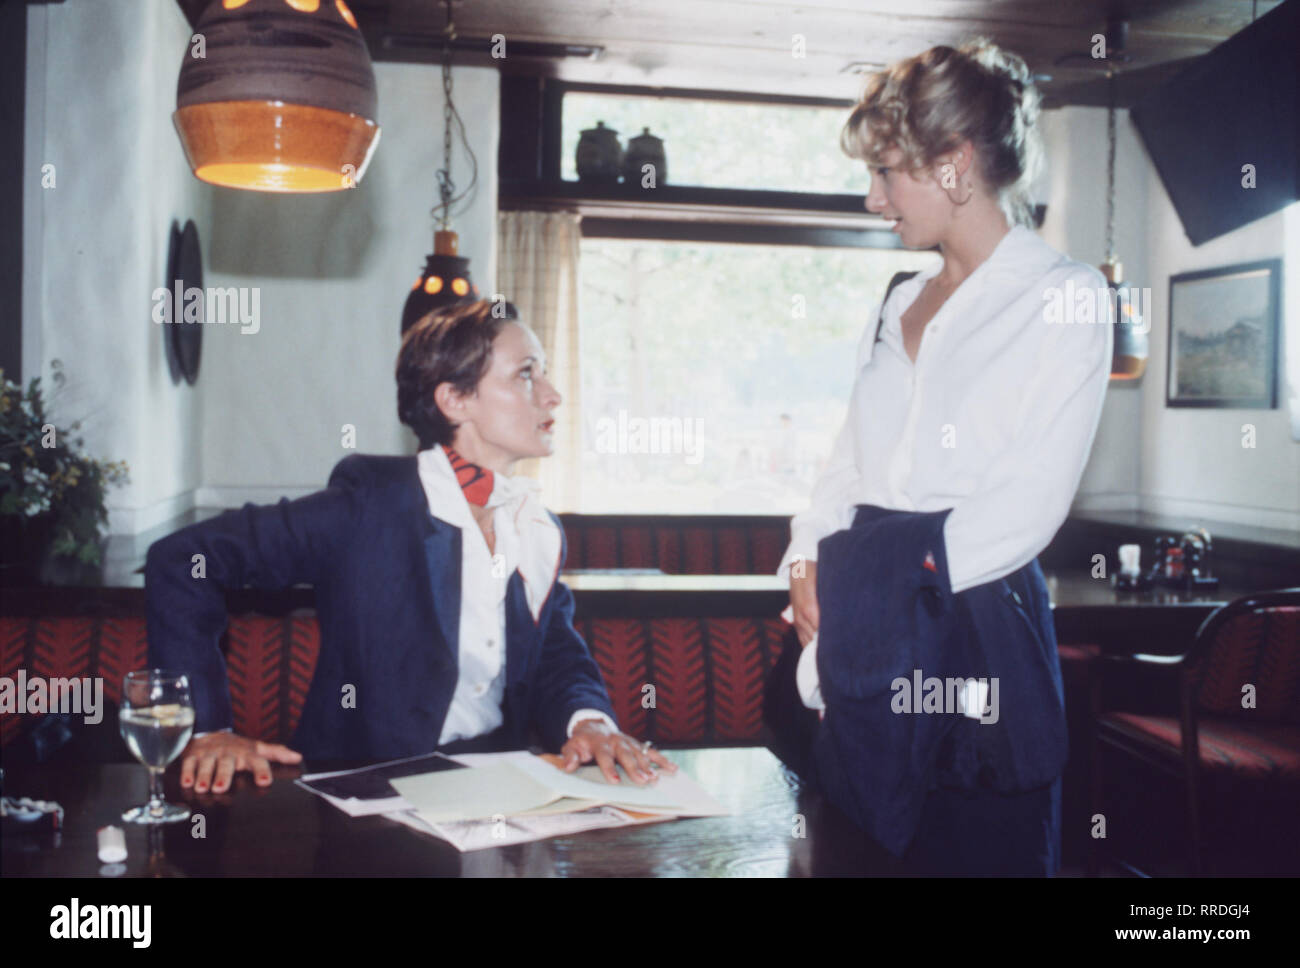 PILOTINNEN- Karin (ELEONORE WEISGERBER, l.) ist Vertreterin für Billig-Kosmetik. Sie reist durch Deutschland und lebt in Hotels, träumt aber von Paris. Ihre Firma teilt ihr die junge Sophie (NADESHDA BRENNICKE) zu, die sie auf ihren Touren anlernen soll. Karin wehrt sich .... Regie: Christian Petzold / Überschrift: PILOTINNEN / BRD 1994 Stock Photo